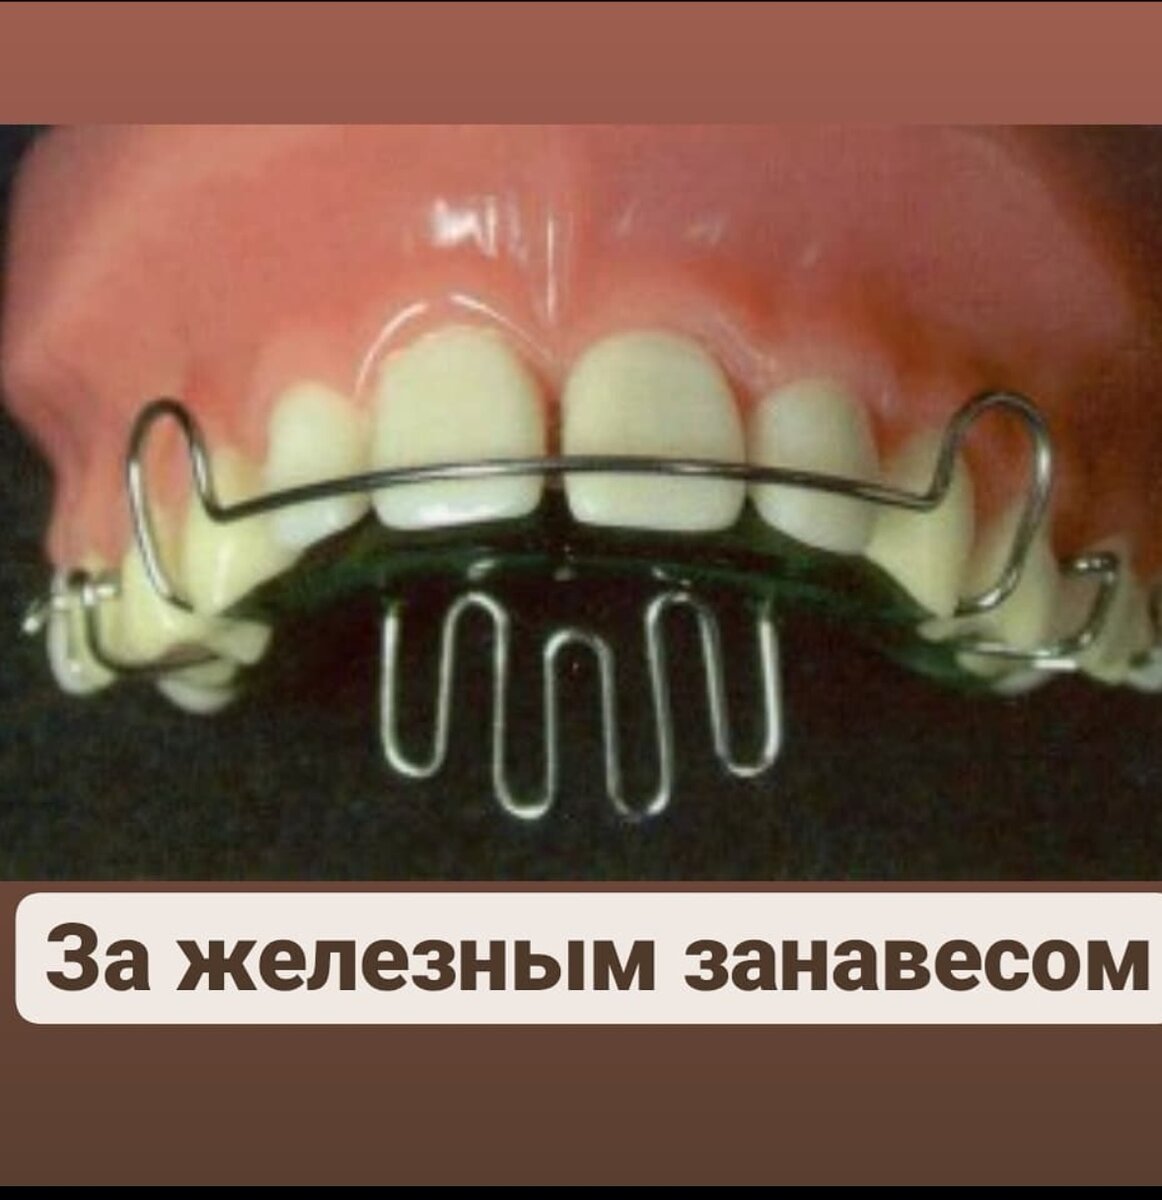 Пластинка с заслоном для языка ортодонтия